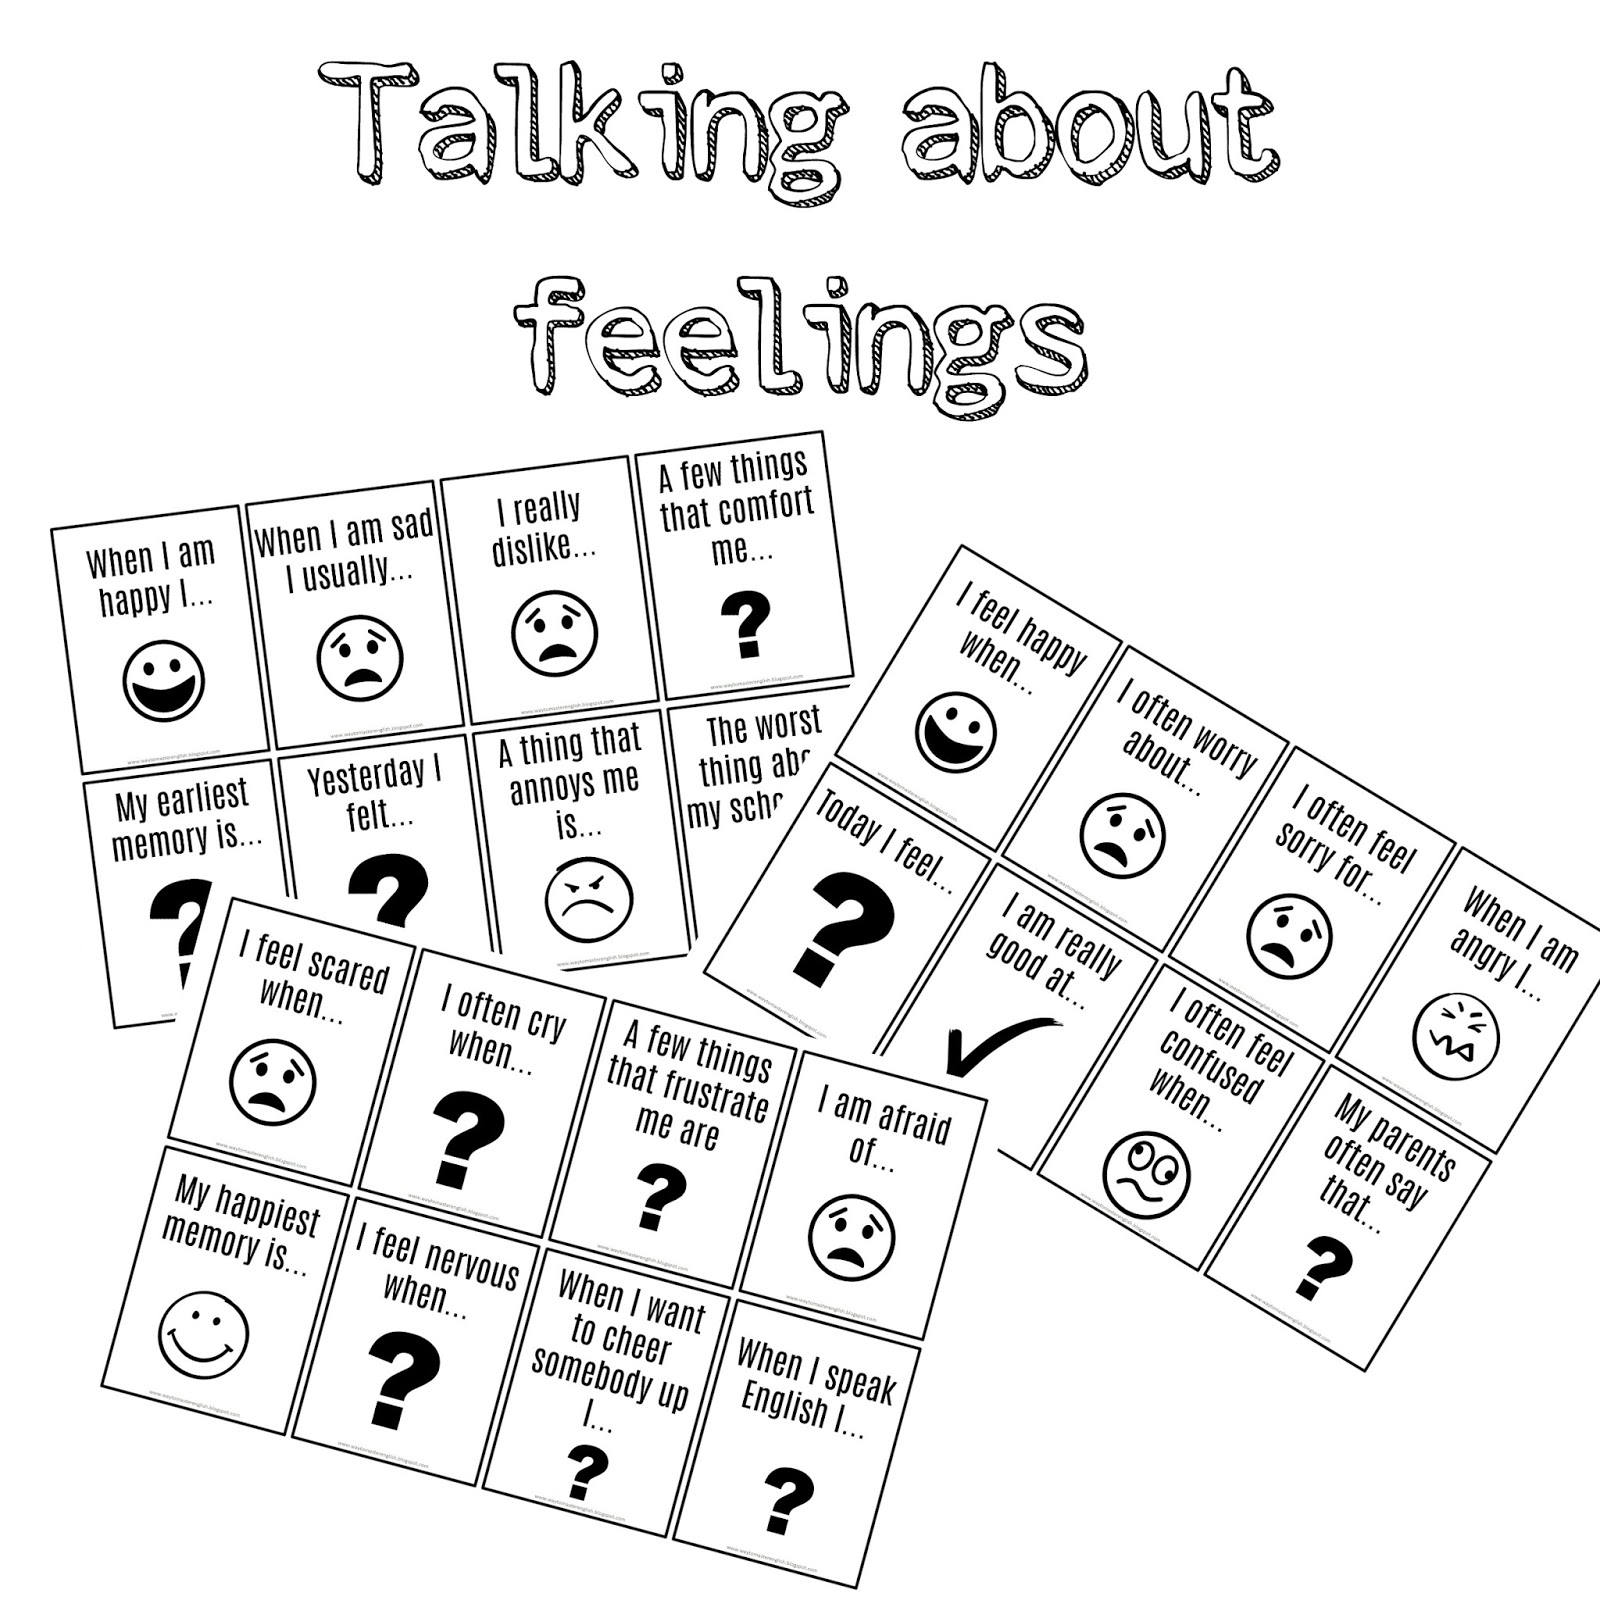 Talking about feelings. About feelings. Talk about feelings. Lagwagon Let's talk about feelings. Let's talk about emotions.